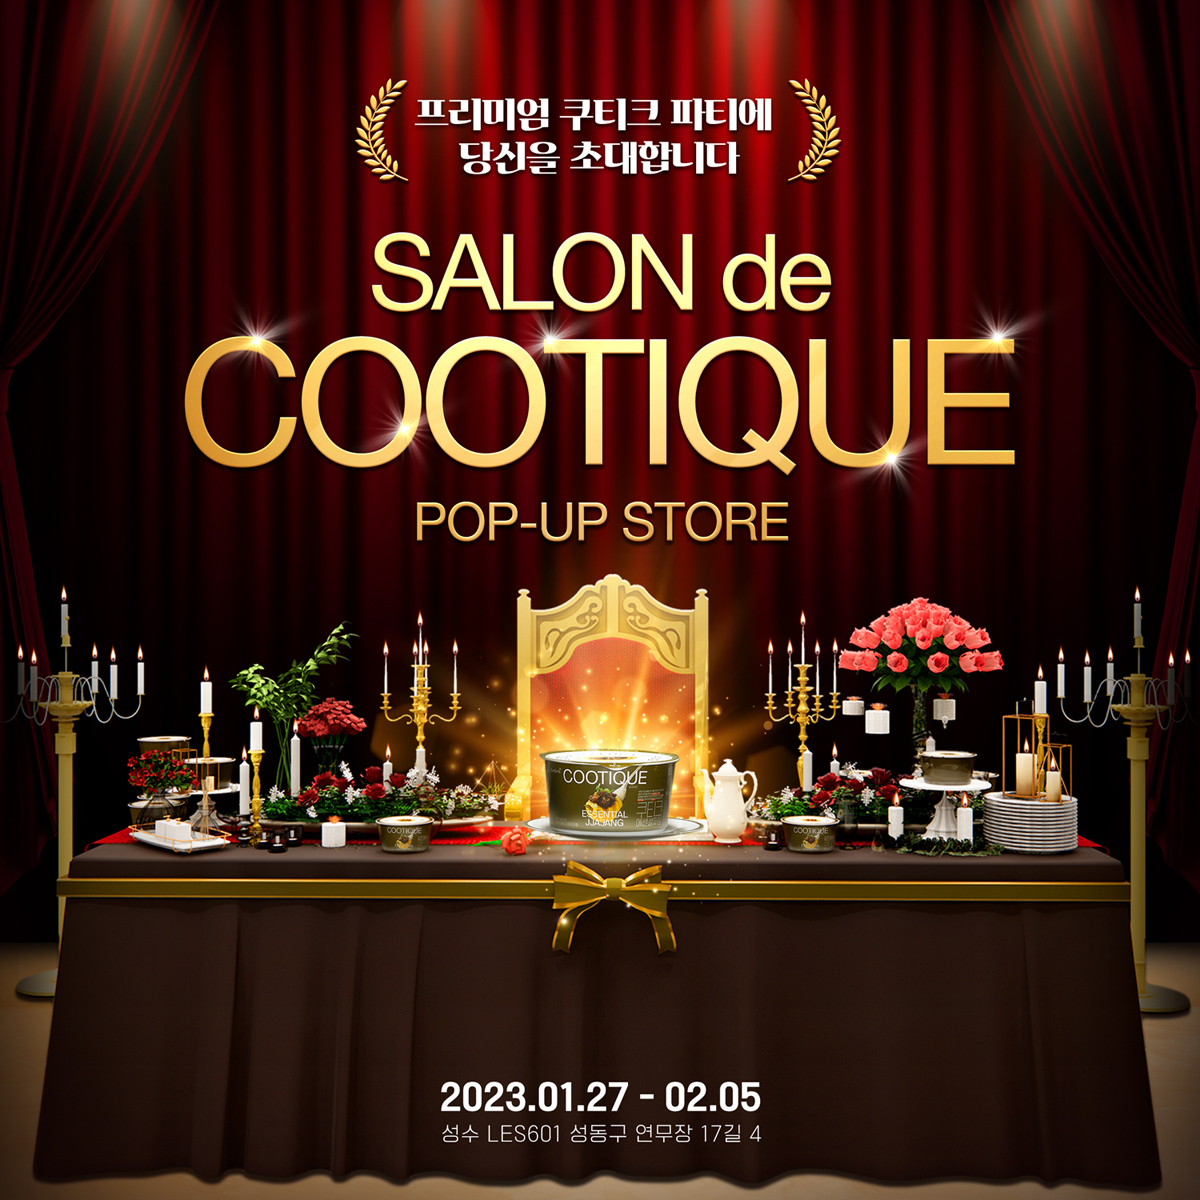 Salon de Cootique popup store poster (Samyang Foods)